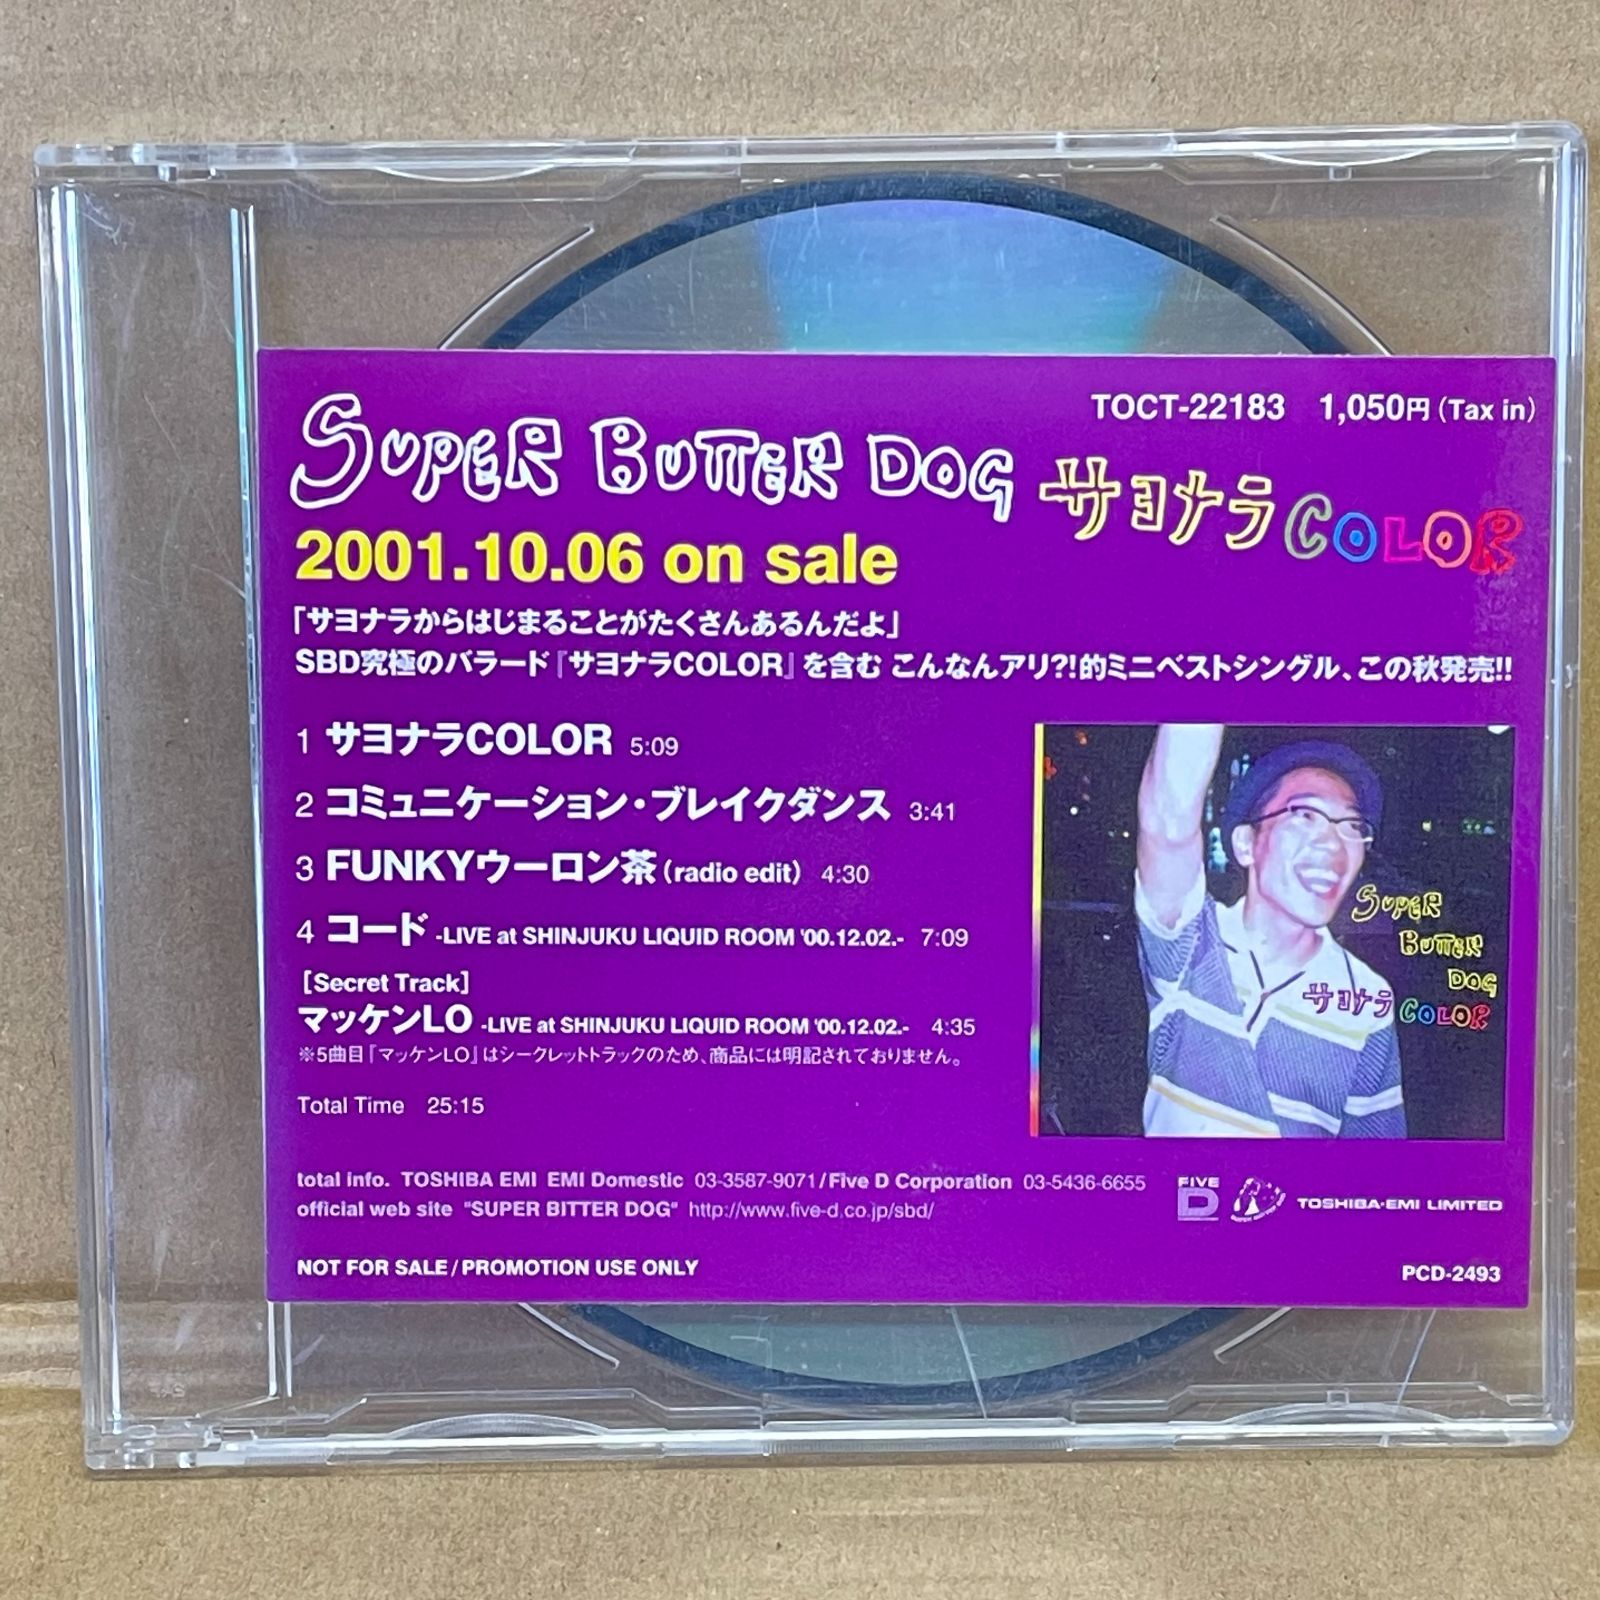 サヨナラCOLOR スペシャル・エディション [DVD] o7r6kf1